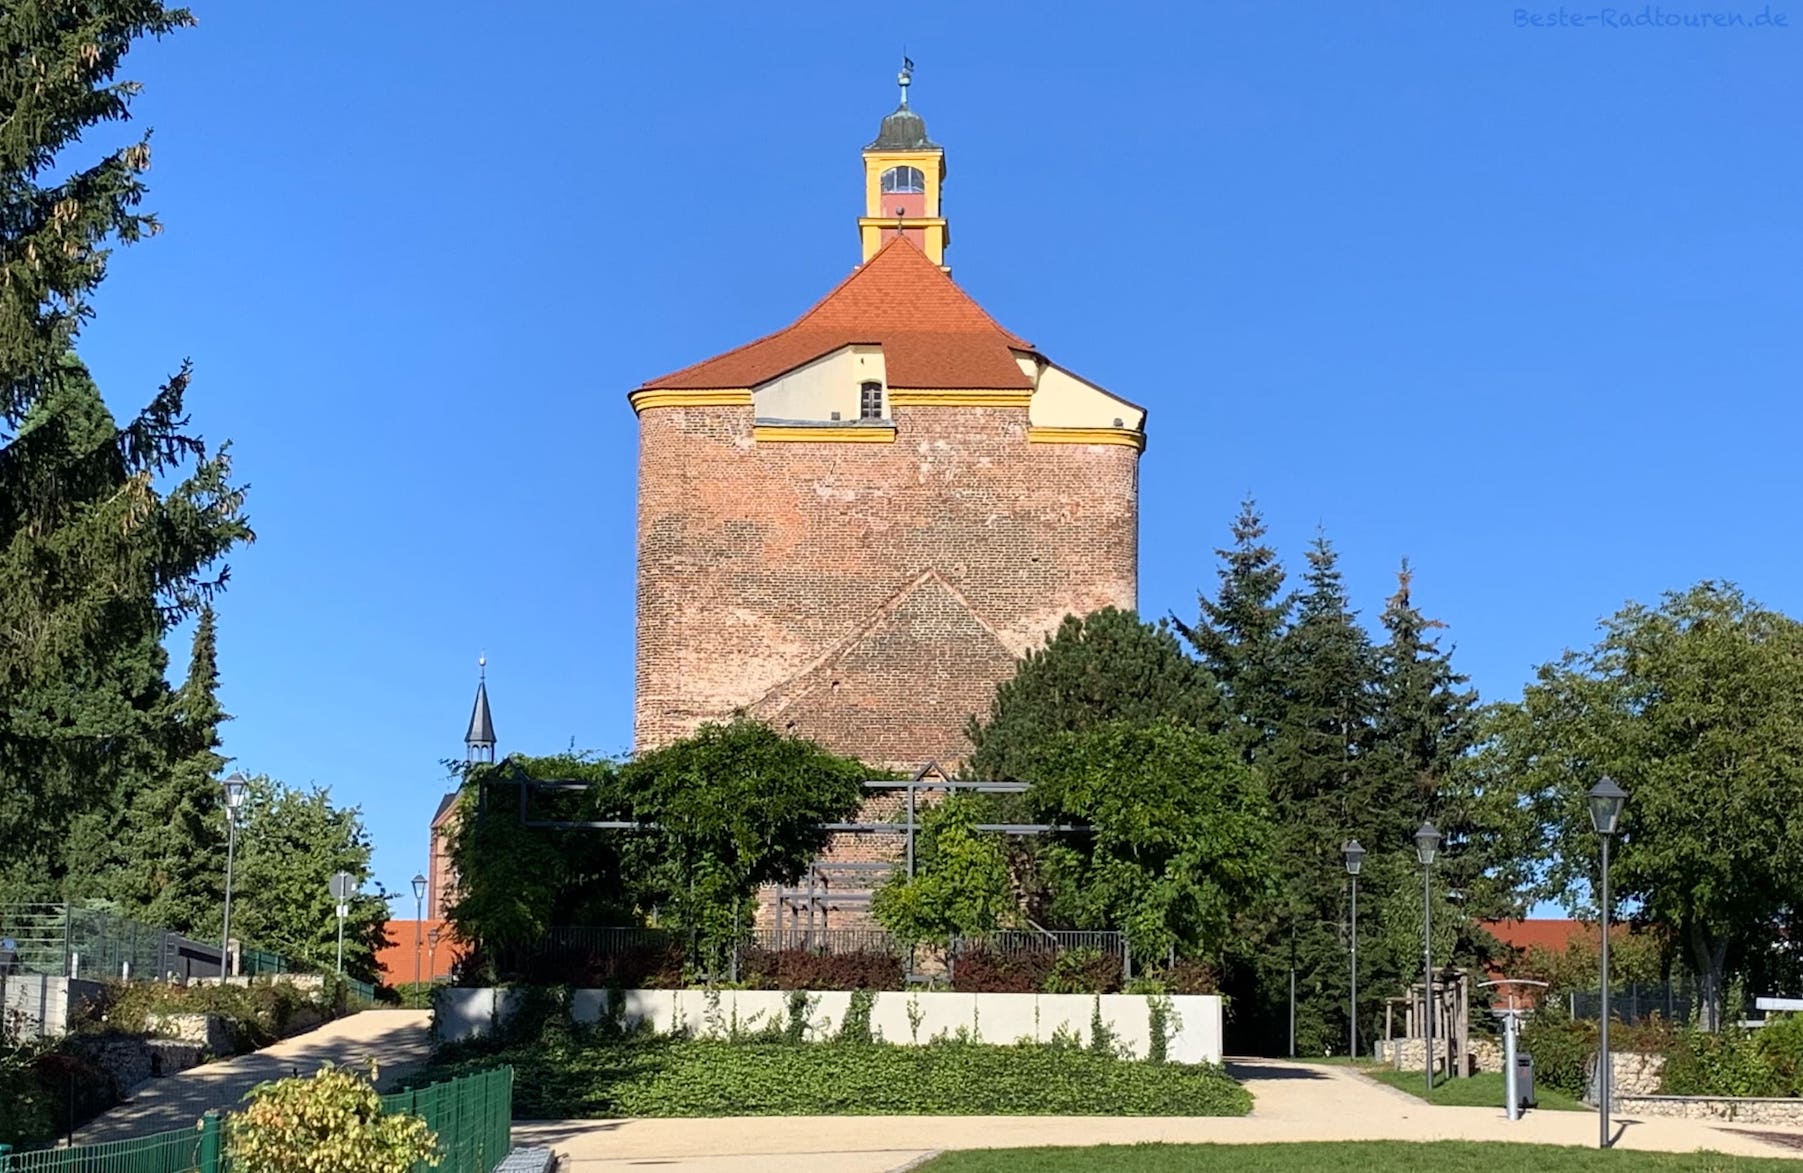 Foto vom Gurkenradweg und Fürst-Pückler-Radweg aus: Turm der ehemaligen Festung in Peitz